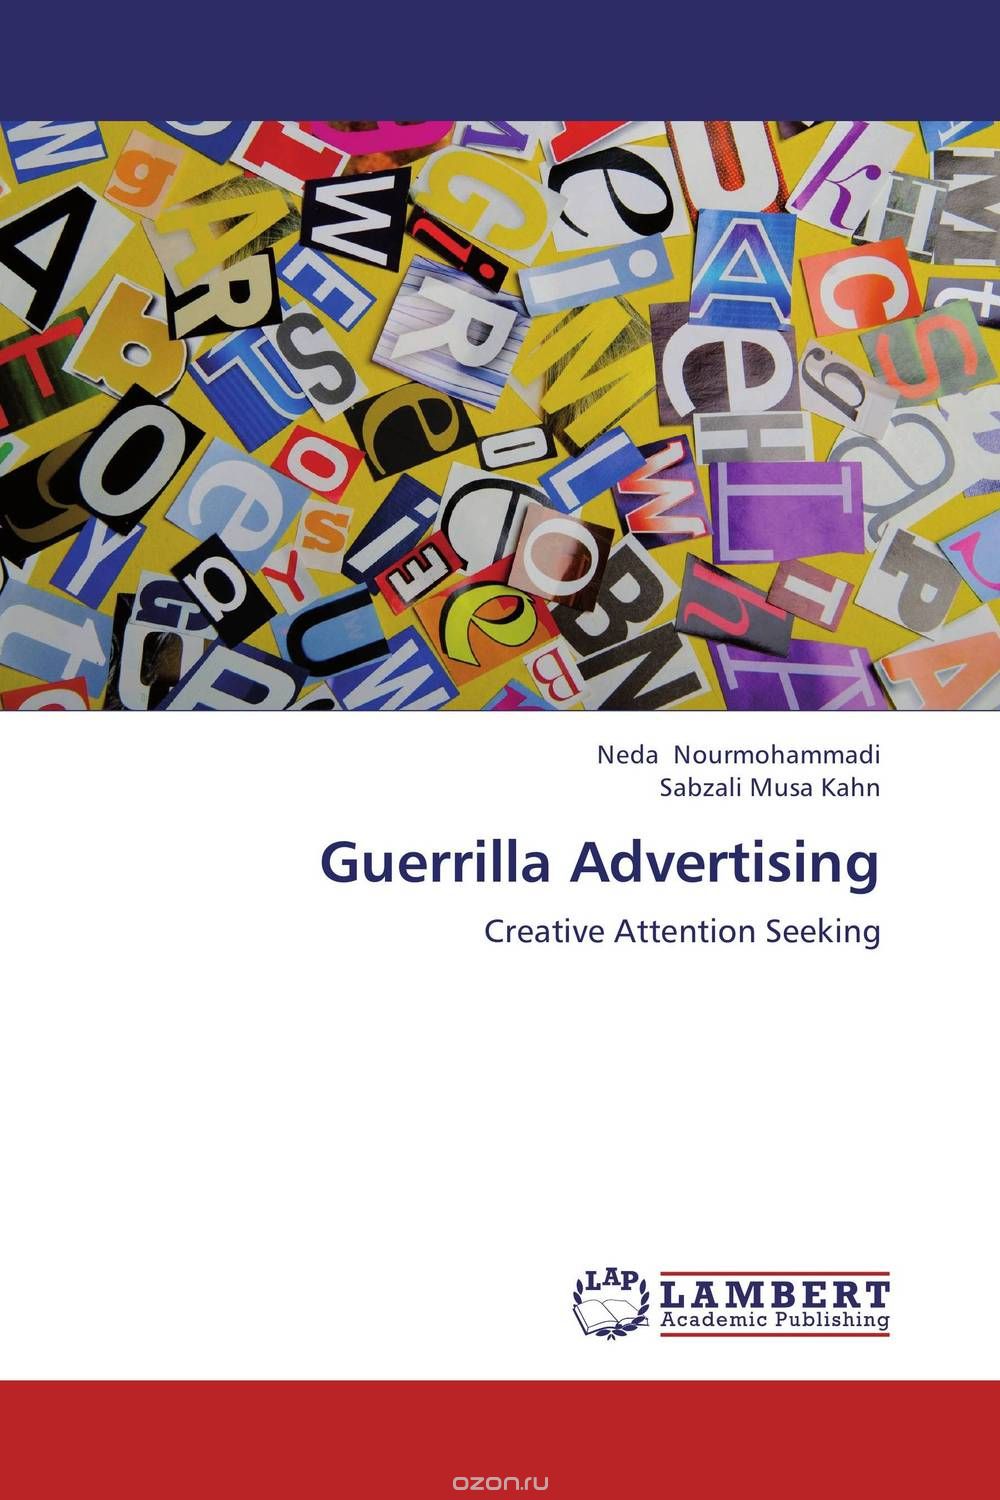 Скачать книгу "Guerrilla Advertising"